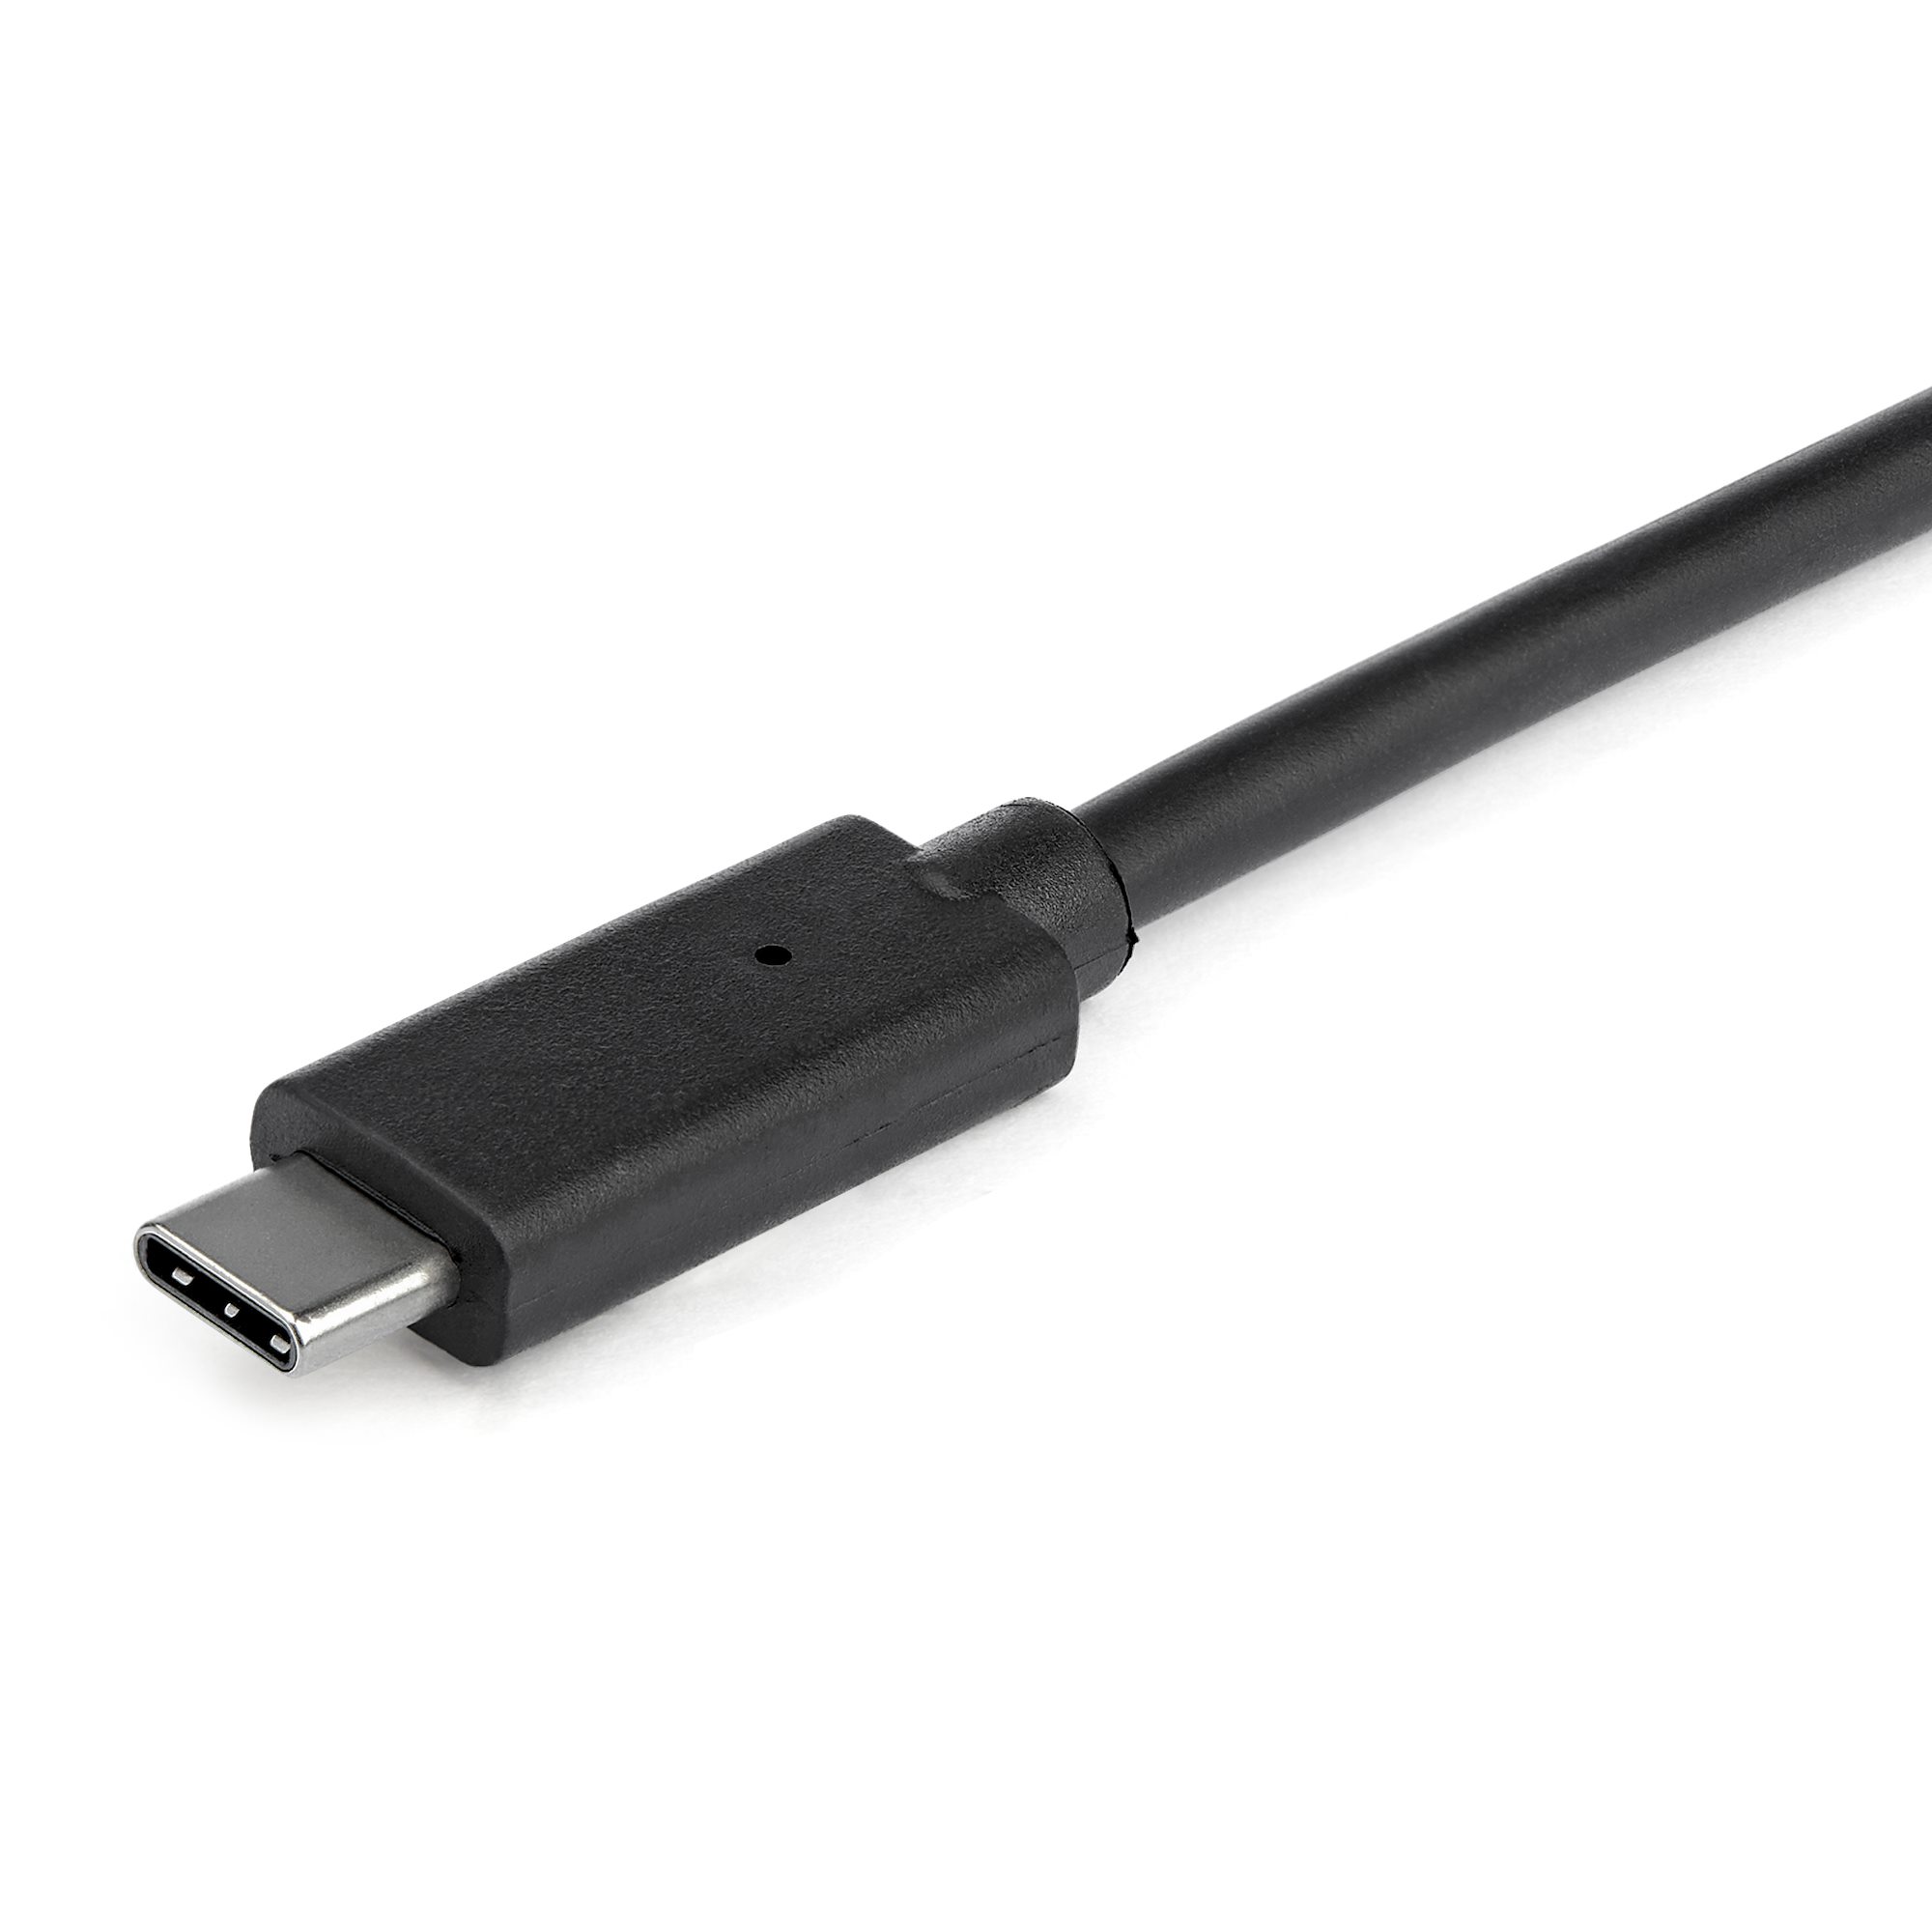 Aceele 10Gbps USB C Hub with Type-C Power Port, 4 Port USB C to